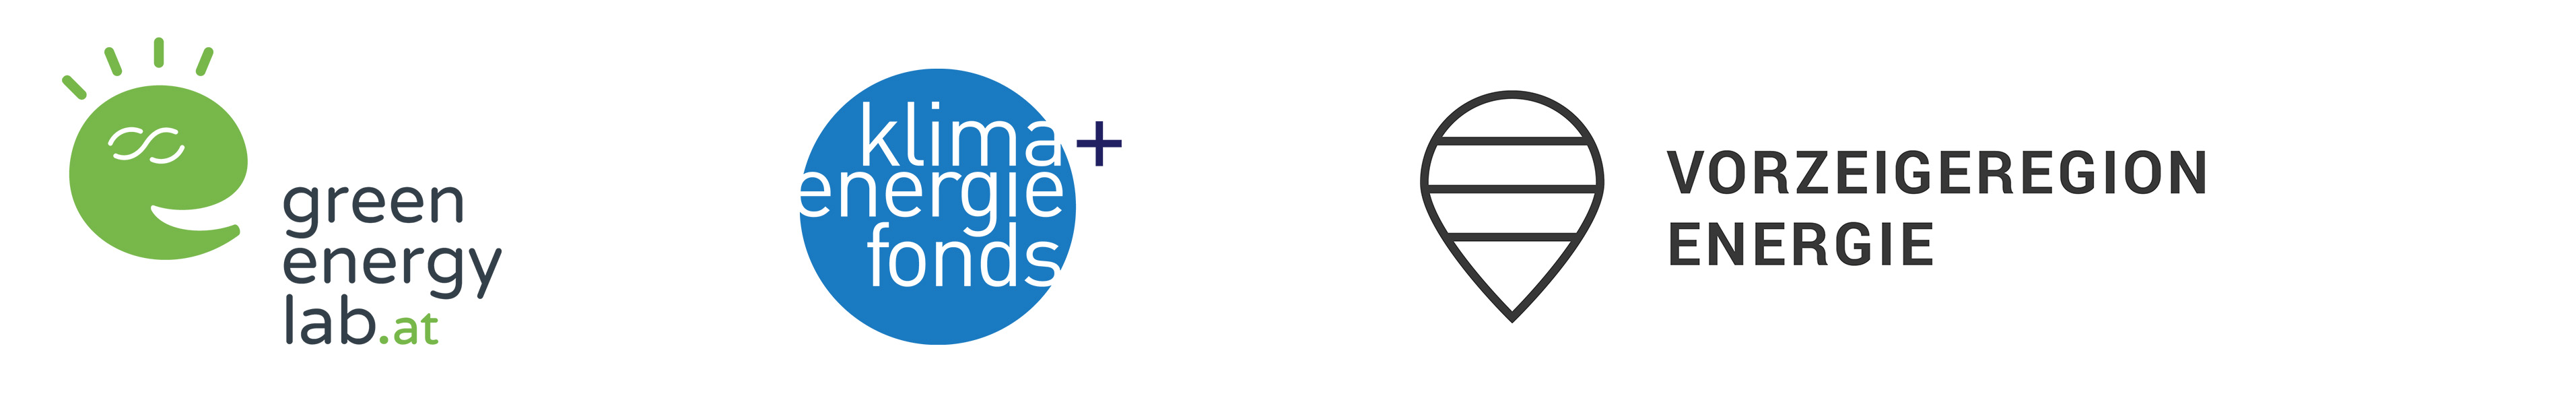 Logoleiste mit dem Logo vom Green Energy Lab, Klimaenergie Fonds und der Vorzeigeregion Energie